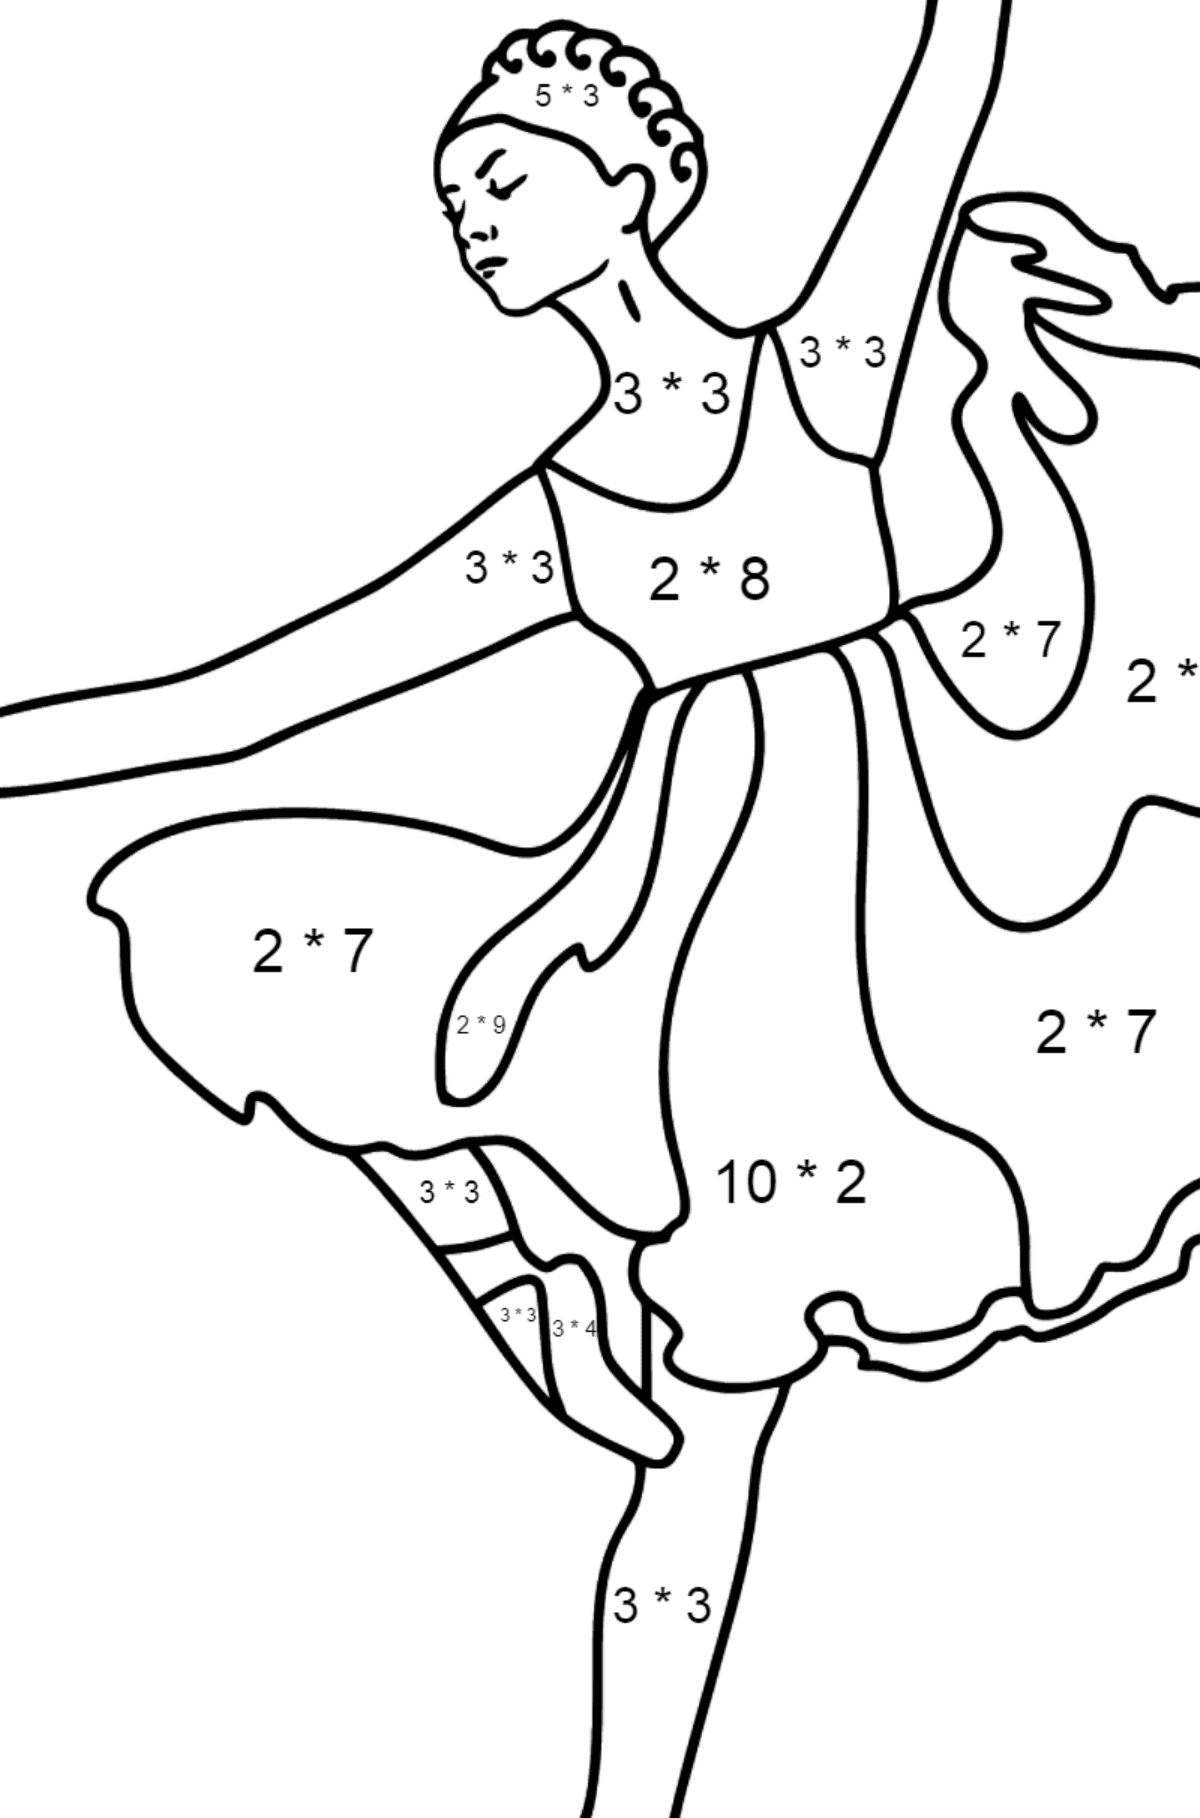 Ballerina i lilla kjole tegning til fargelegging - Matematisk fargeleggingsside - multiplisering for barn